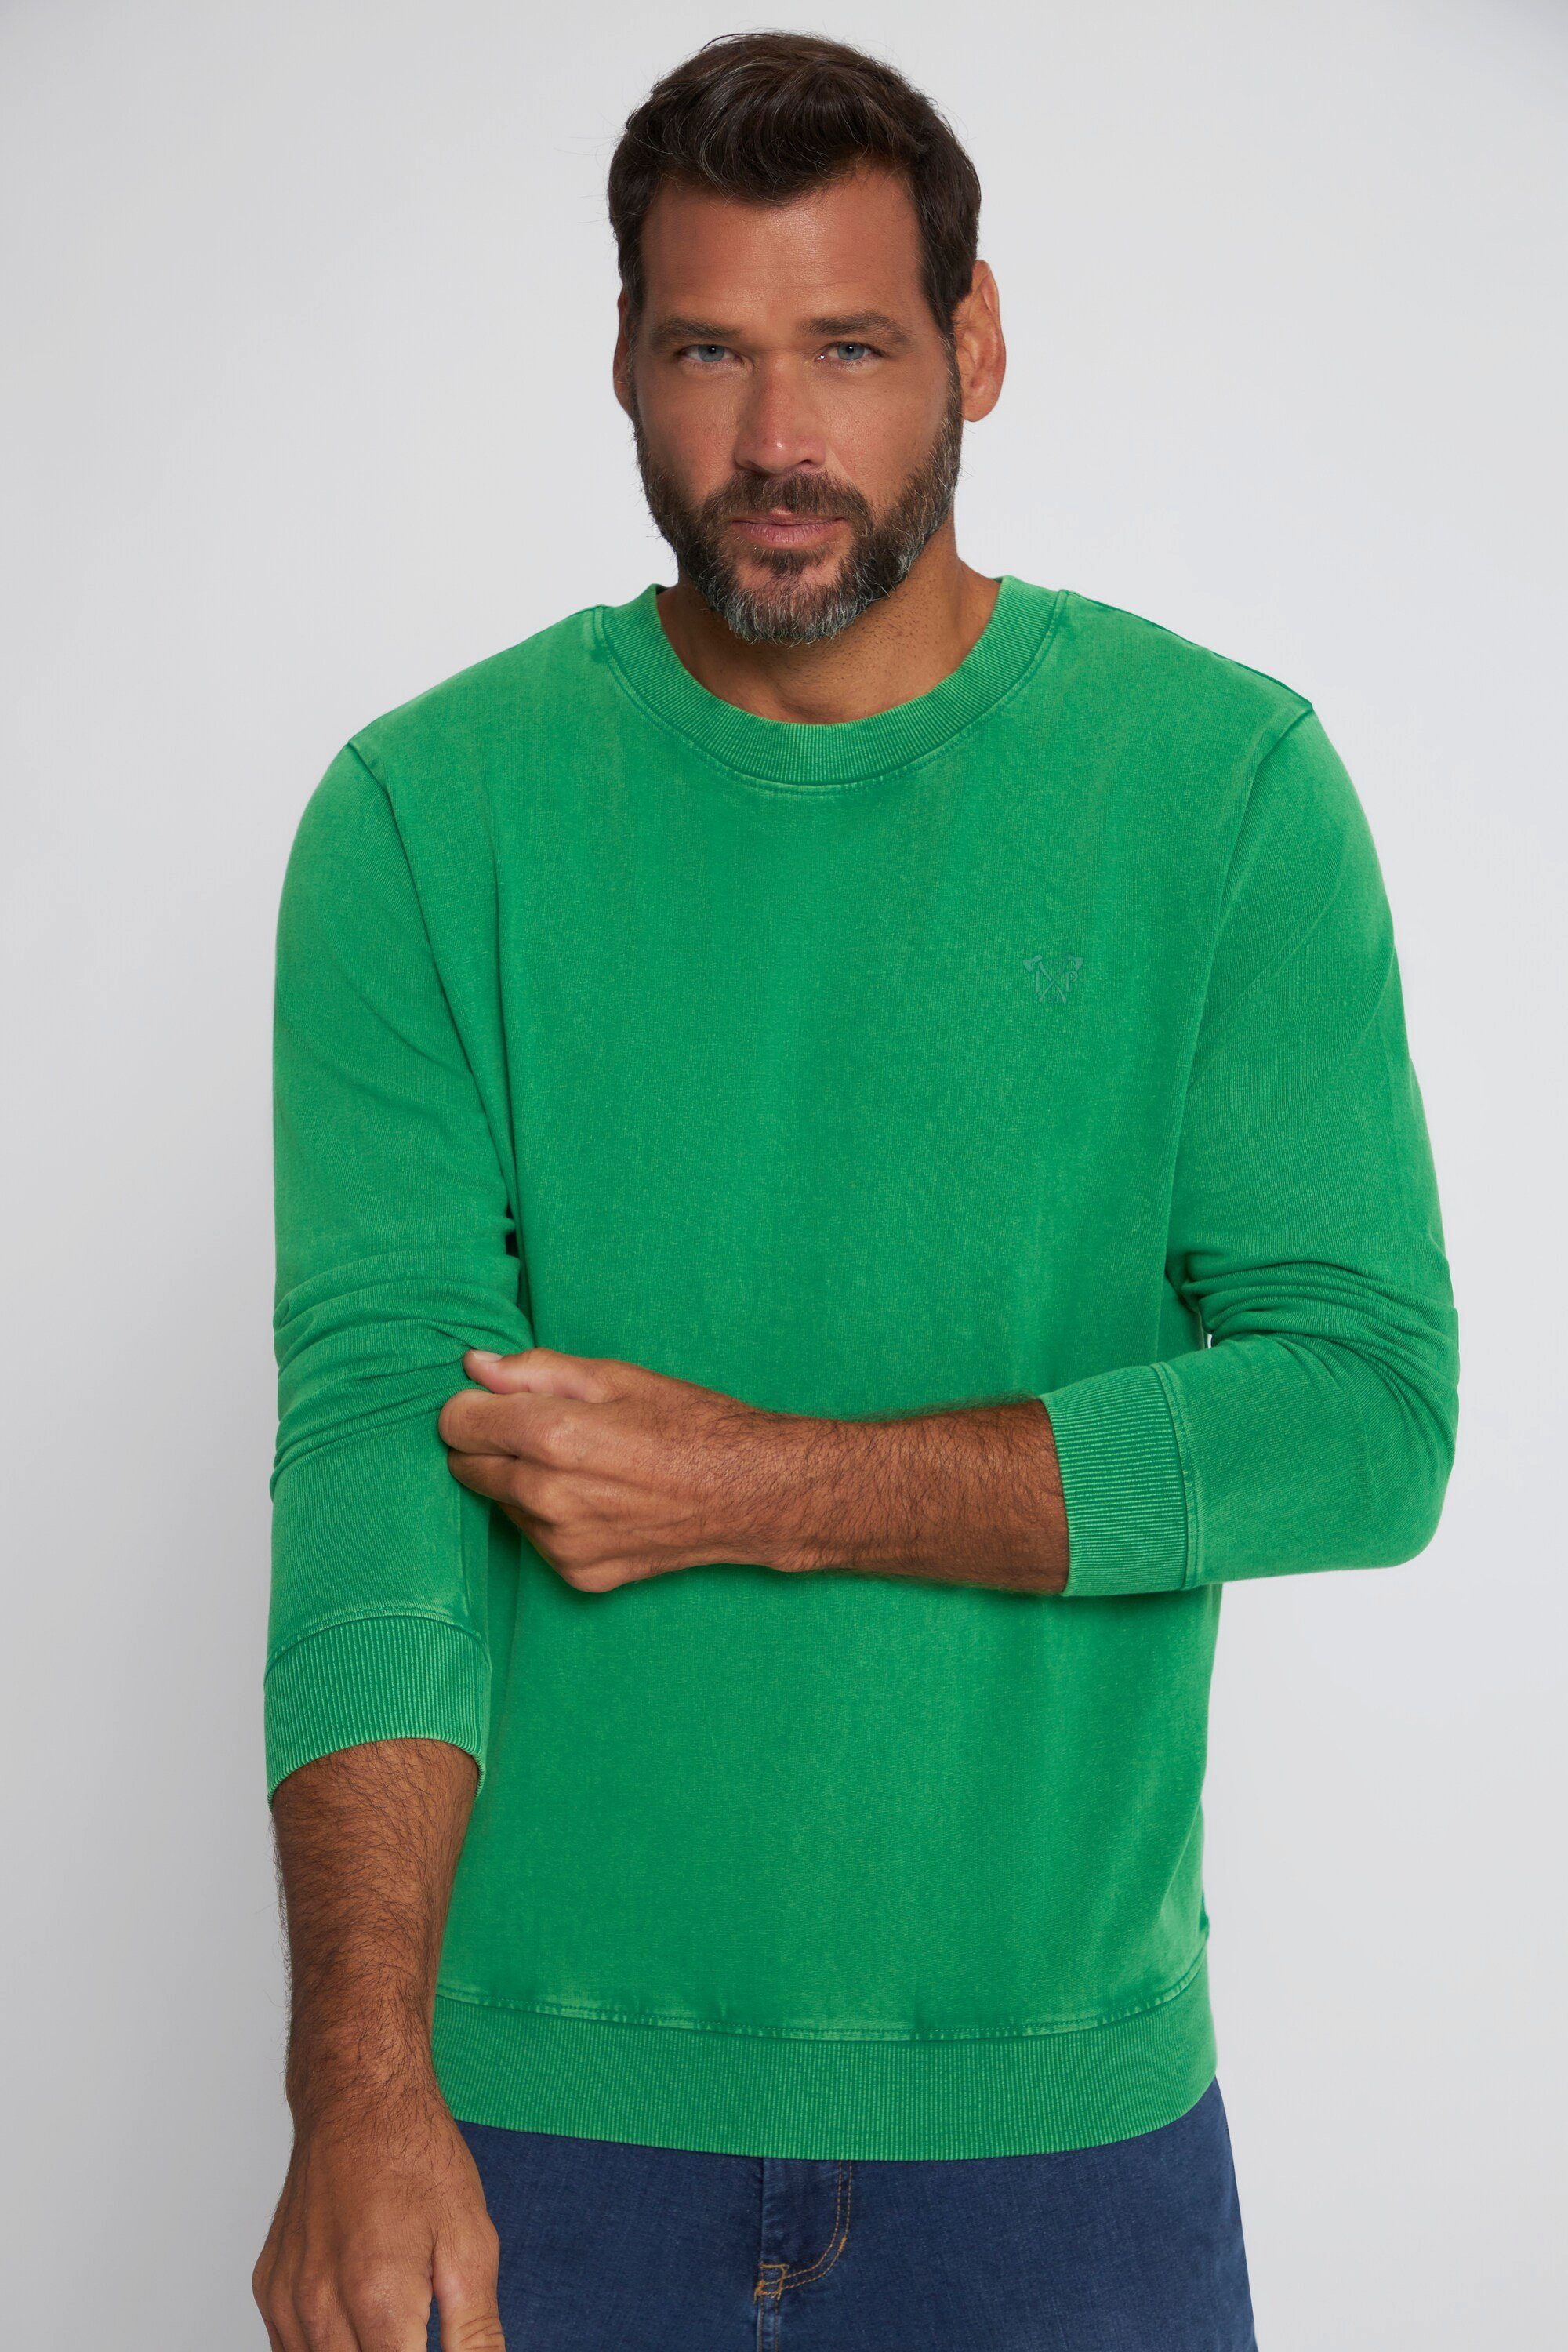 JP1880 T-Shirt Sweatshirt leichte Qualität Bauchfit acid washed grün